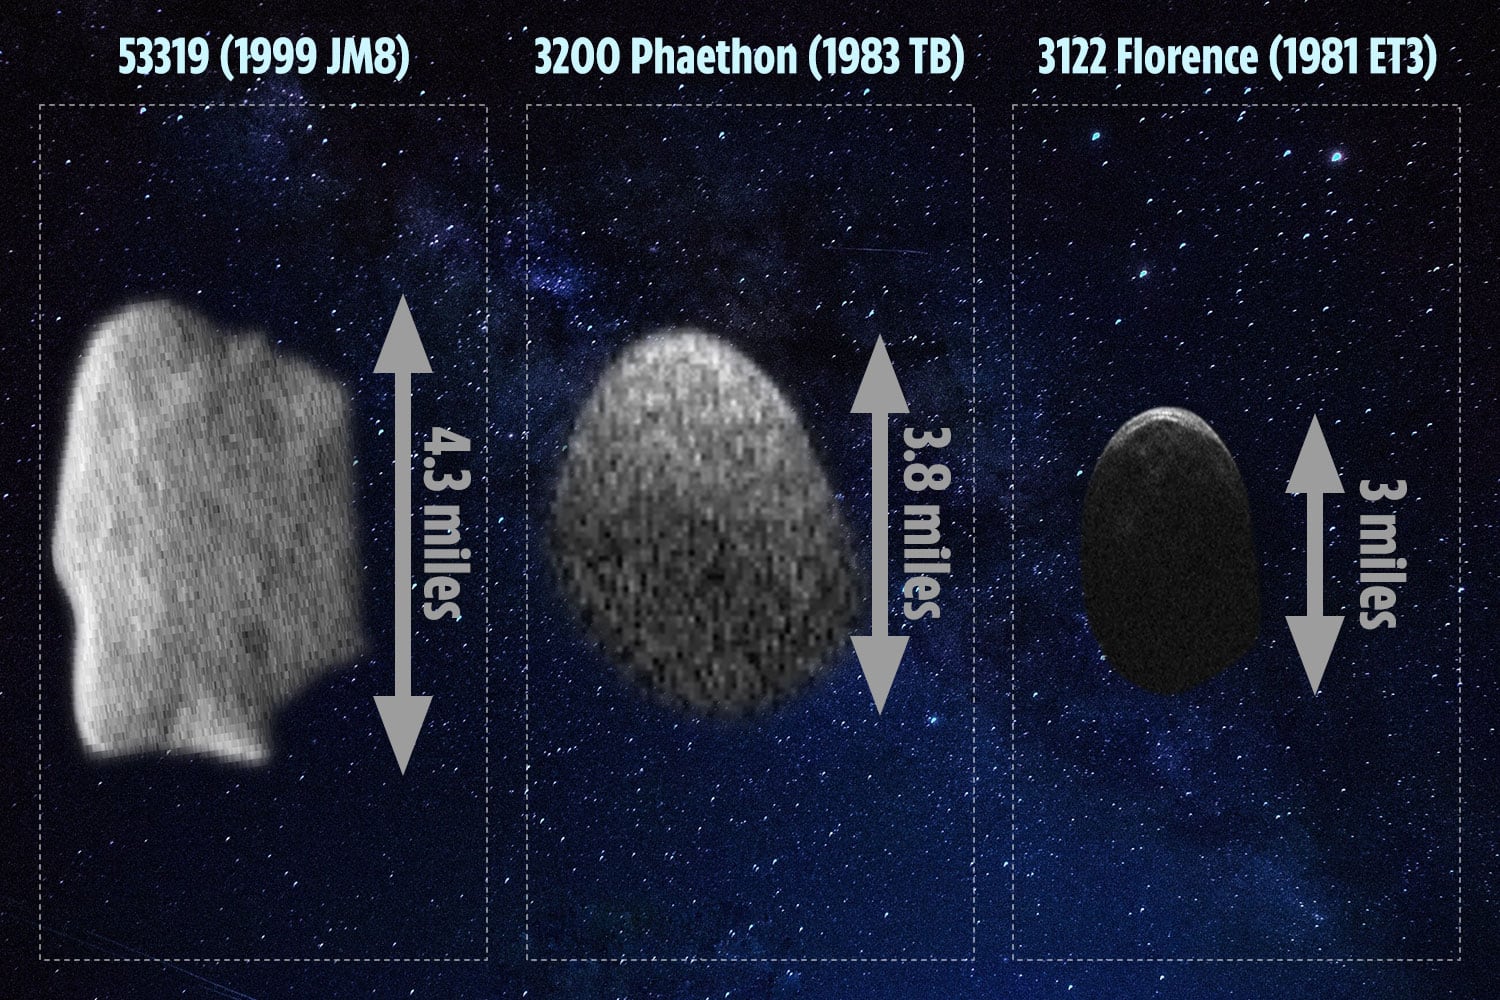 53319 (1999 JM8) es el asteroide potencialmente peligroso más grande conocido en el mundo